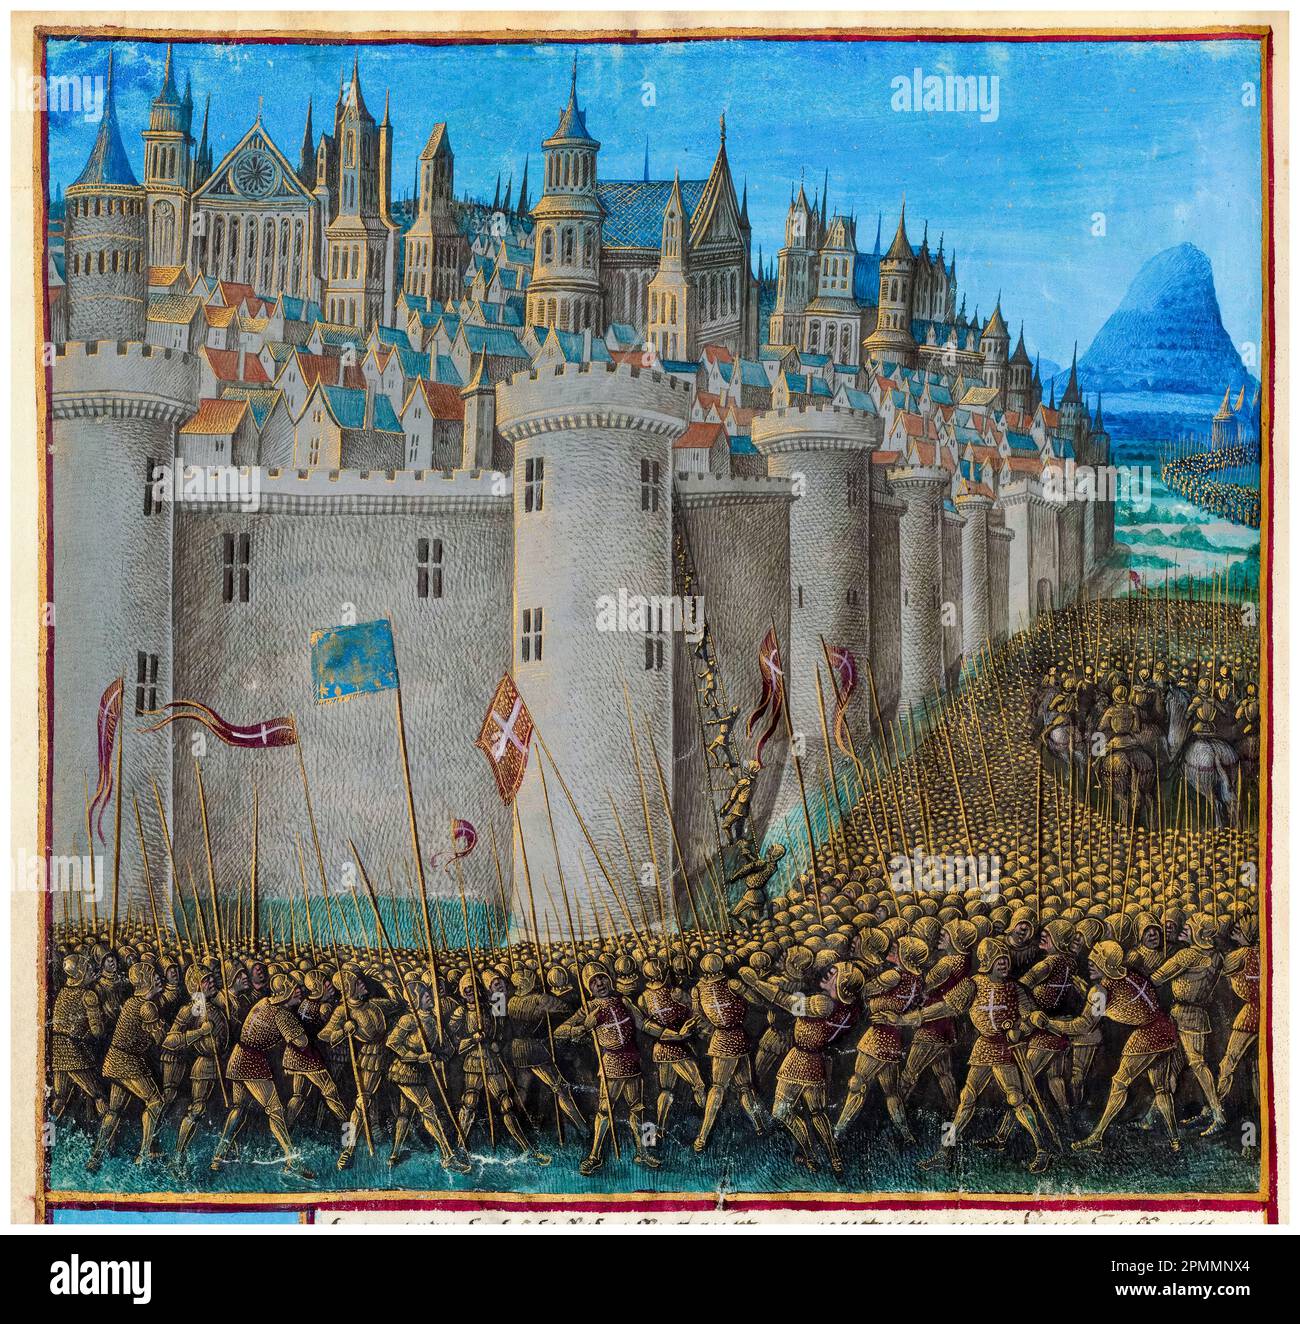 Croisades : le siège d'Antioche (1097-1098), une bataille lors de la première croisade, peinture manuscrite illuminée de Jean Colombe, vers 1474 Banque D'Images